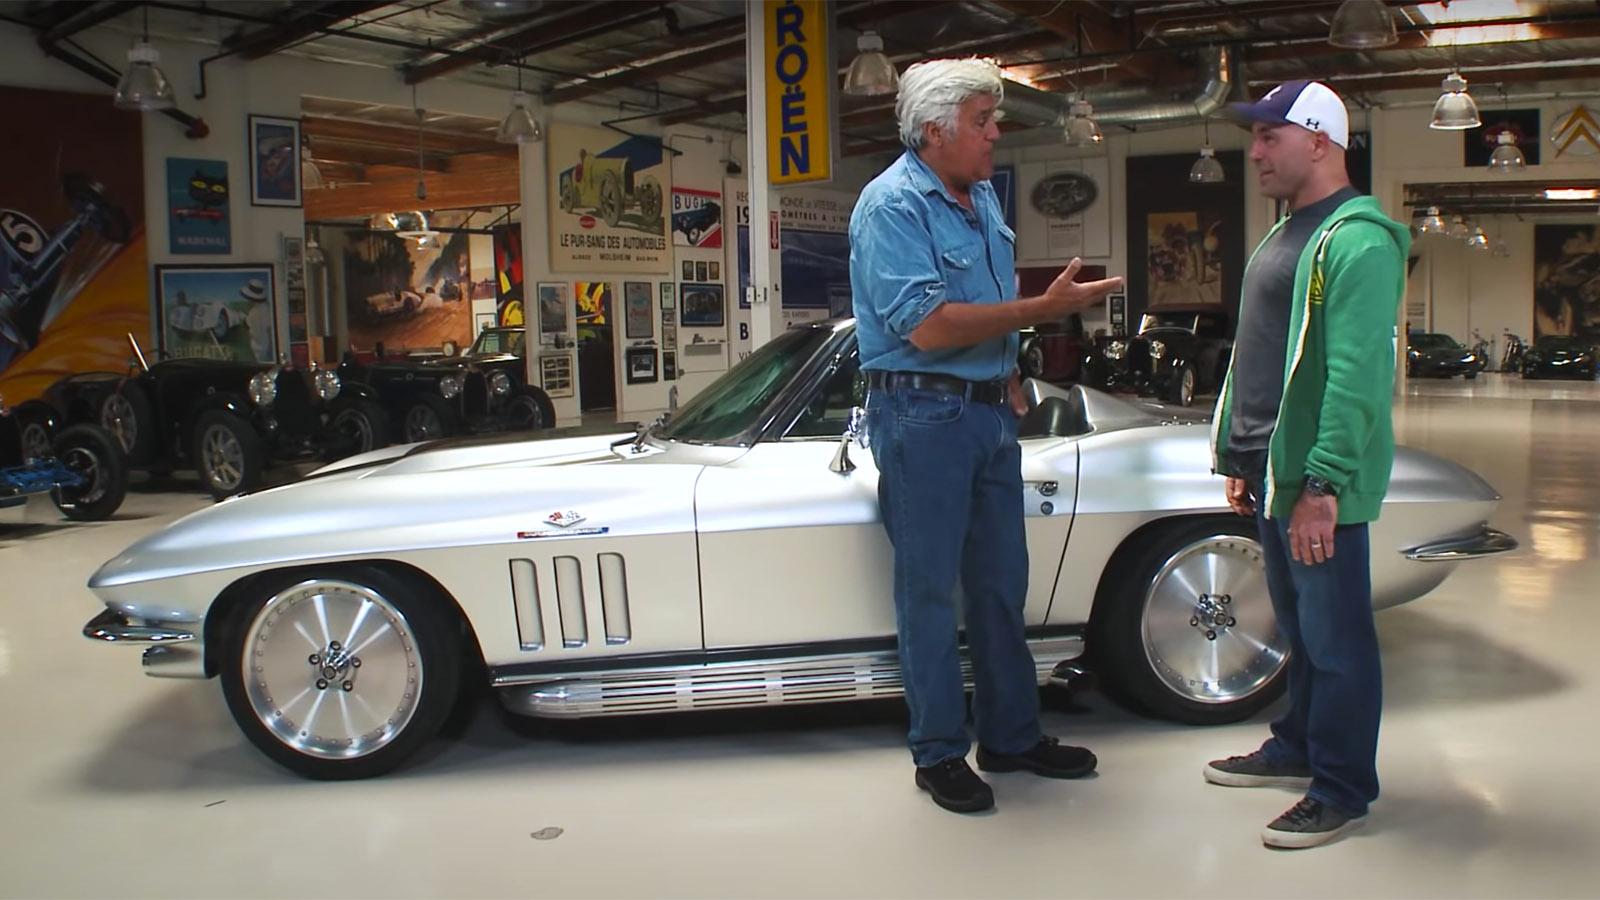 Joe Rogans Incredible Car Collection Featuring Chevrolet Porsche